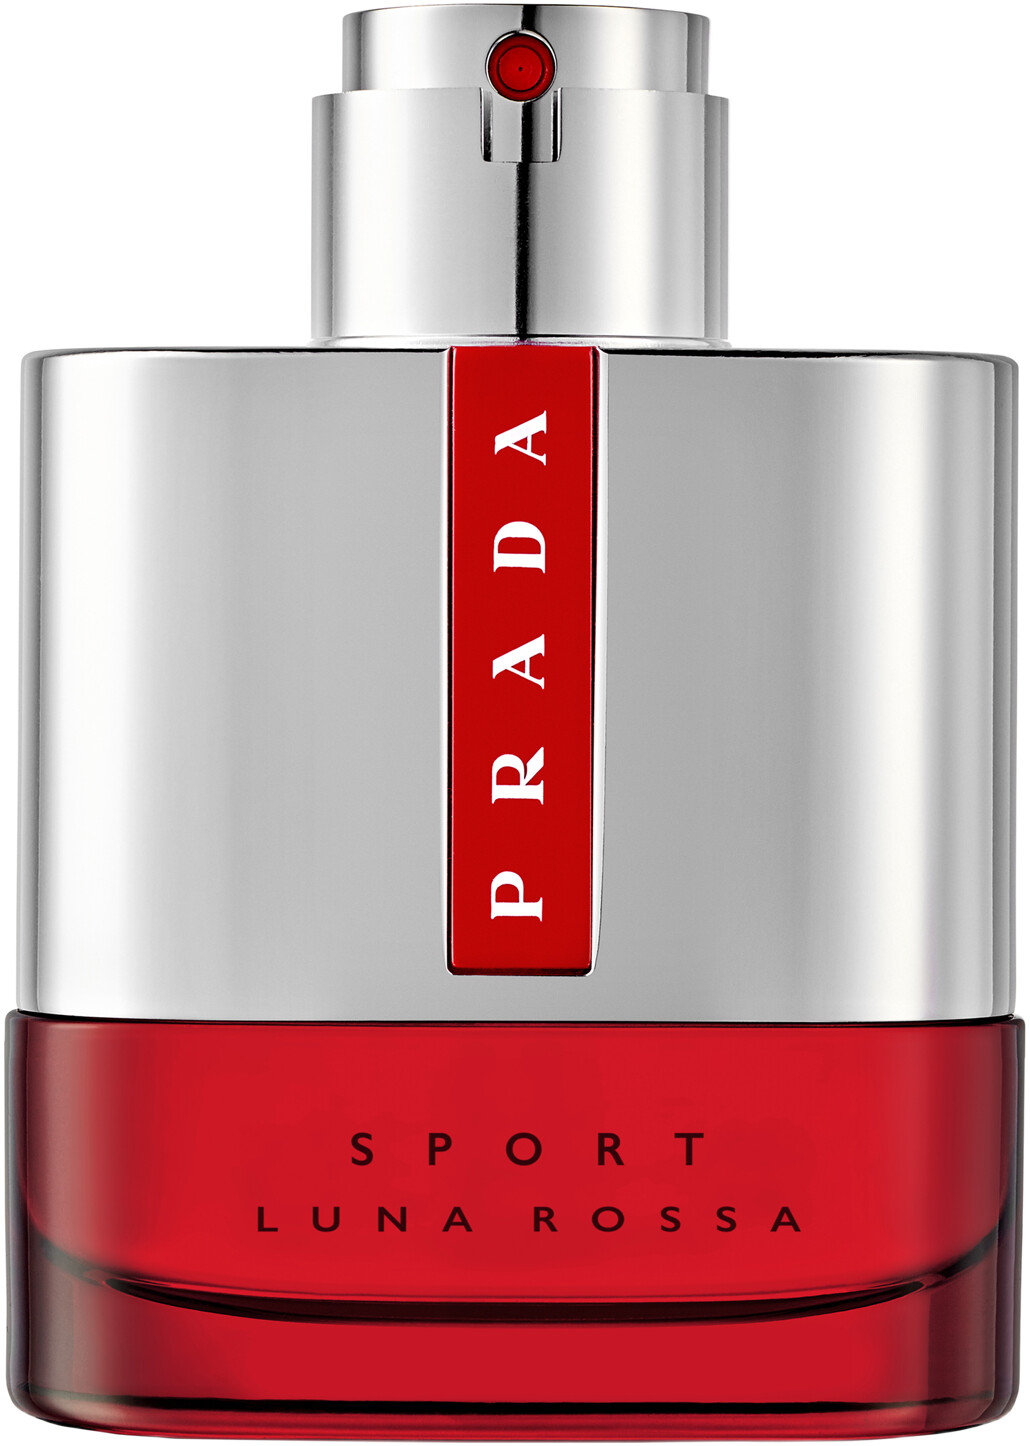 Prada Luna Rossa Sport Eau de Toilette Spray 50ml